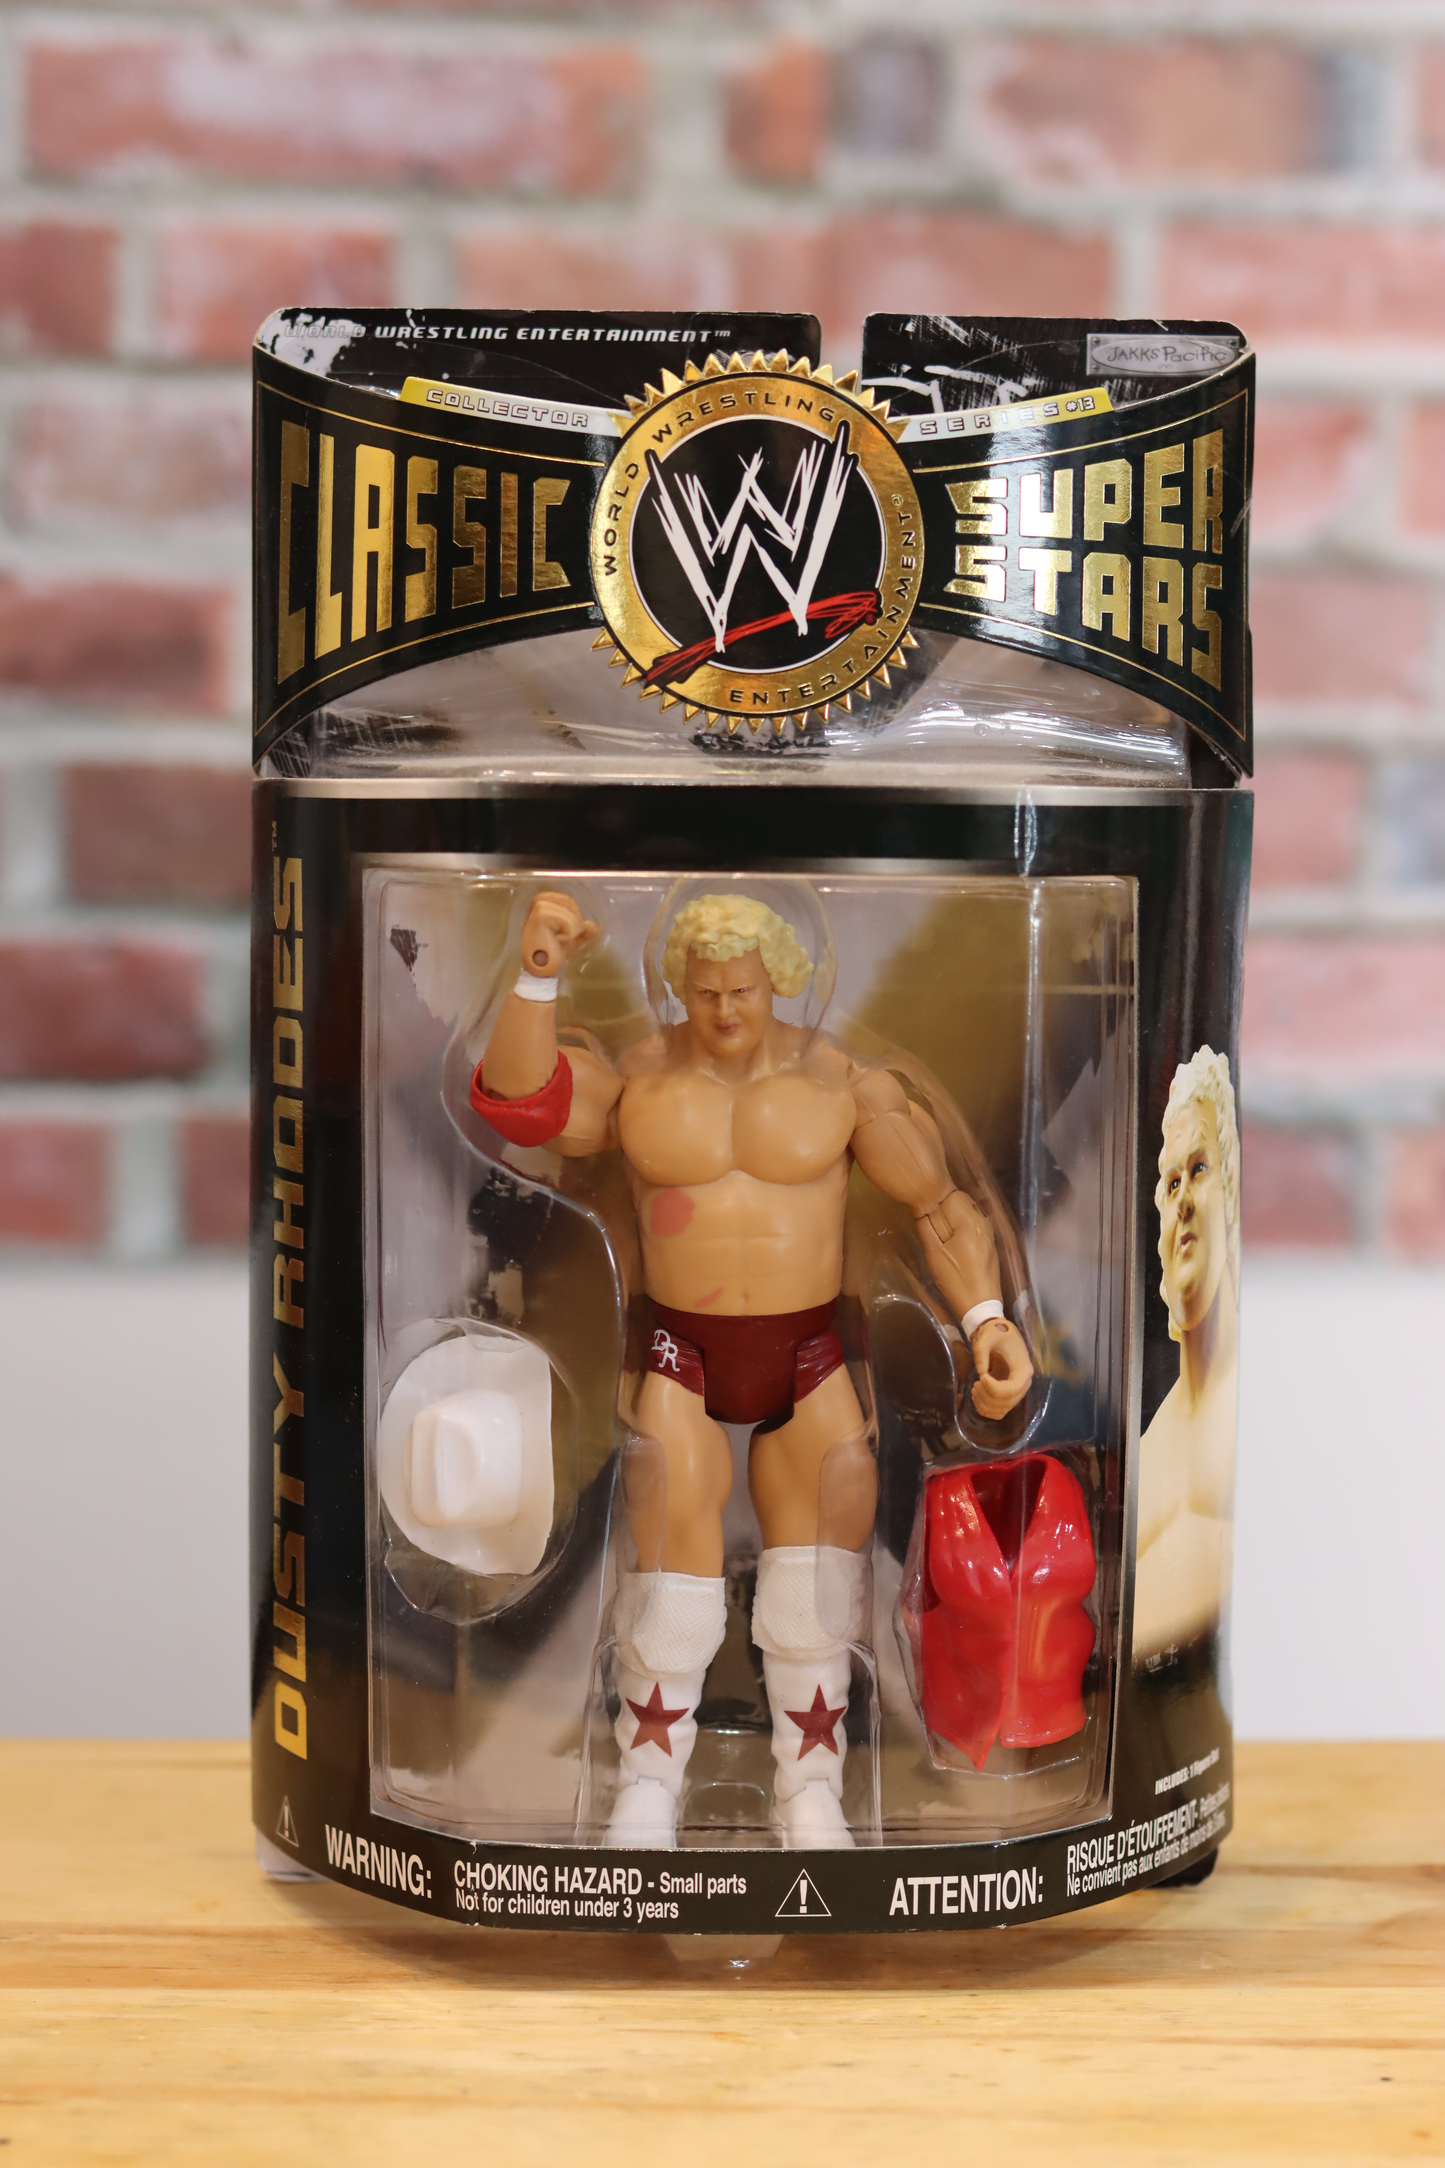 2005 2006 Jakks Pacific Classic Superstars WWF WWE Wrestling Figure Dusty Rhodes